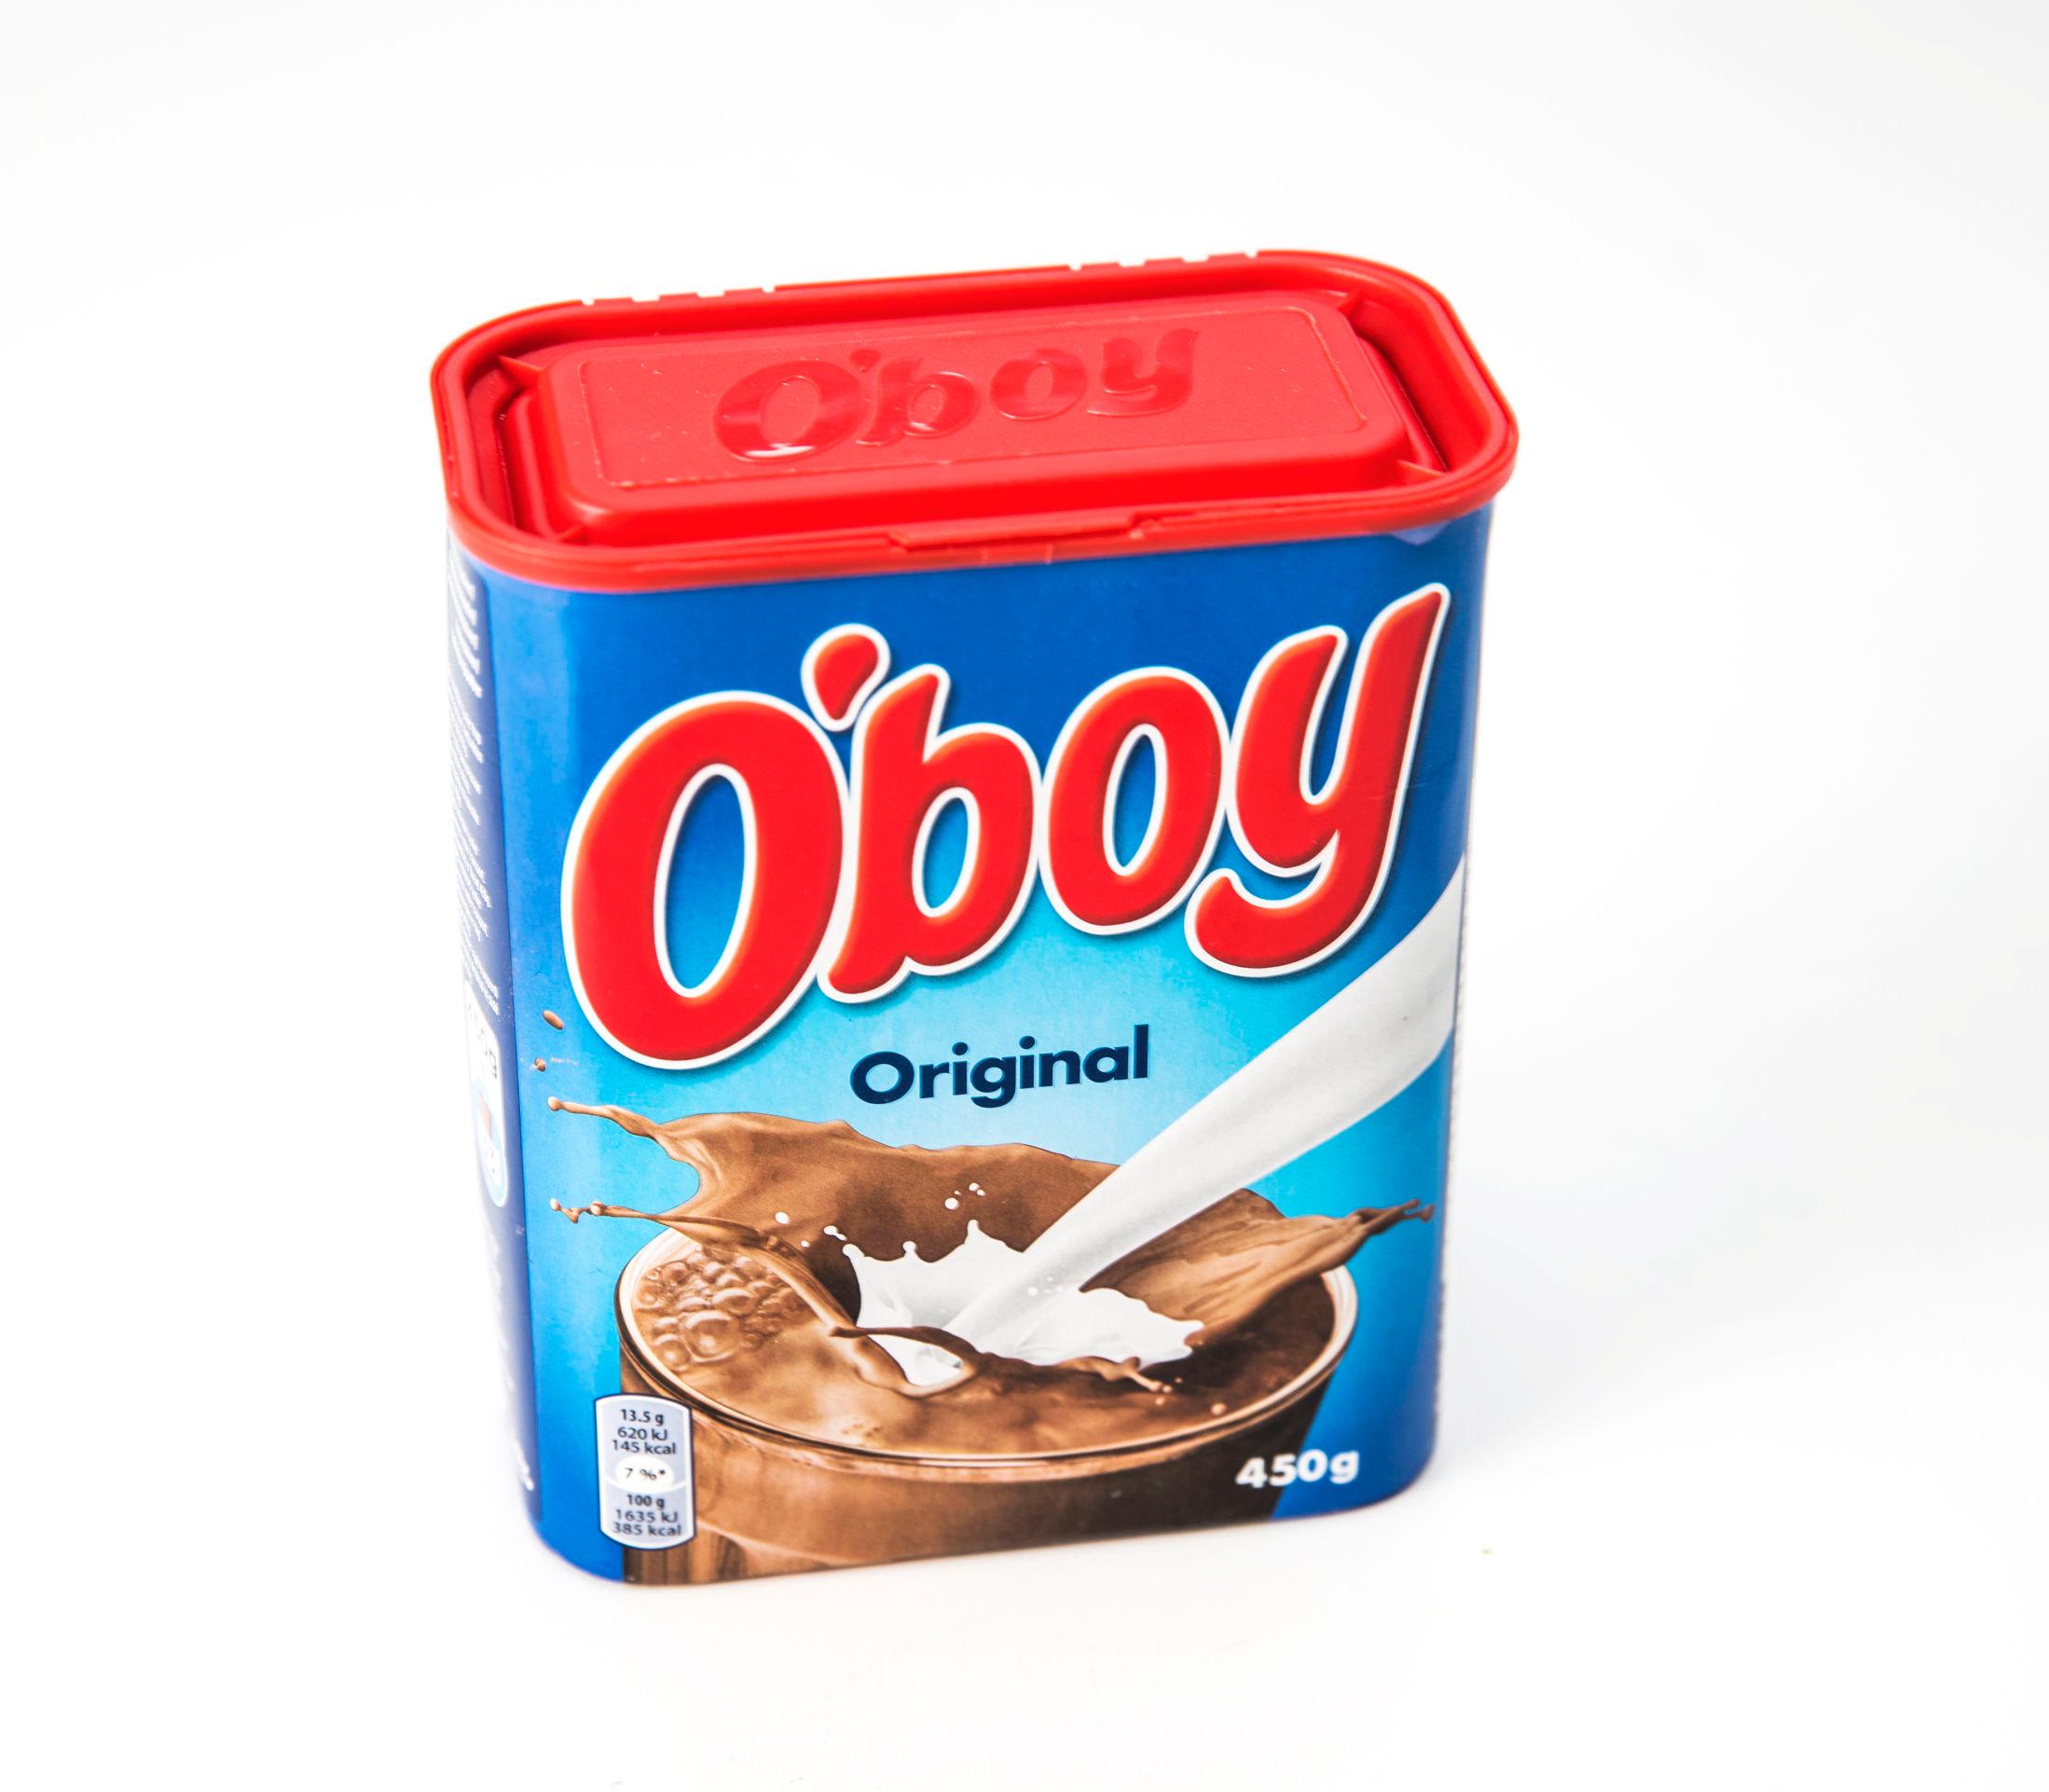 O'BOY: Den kjente røde og blå O'boy-boksen har stått i norske kjøkkenskap siden 1960. Fra februar blir boksen byttet ut til fordel for et mer miljøvennlig alternativ. Foto: FRODE HANSEN, VG